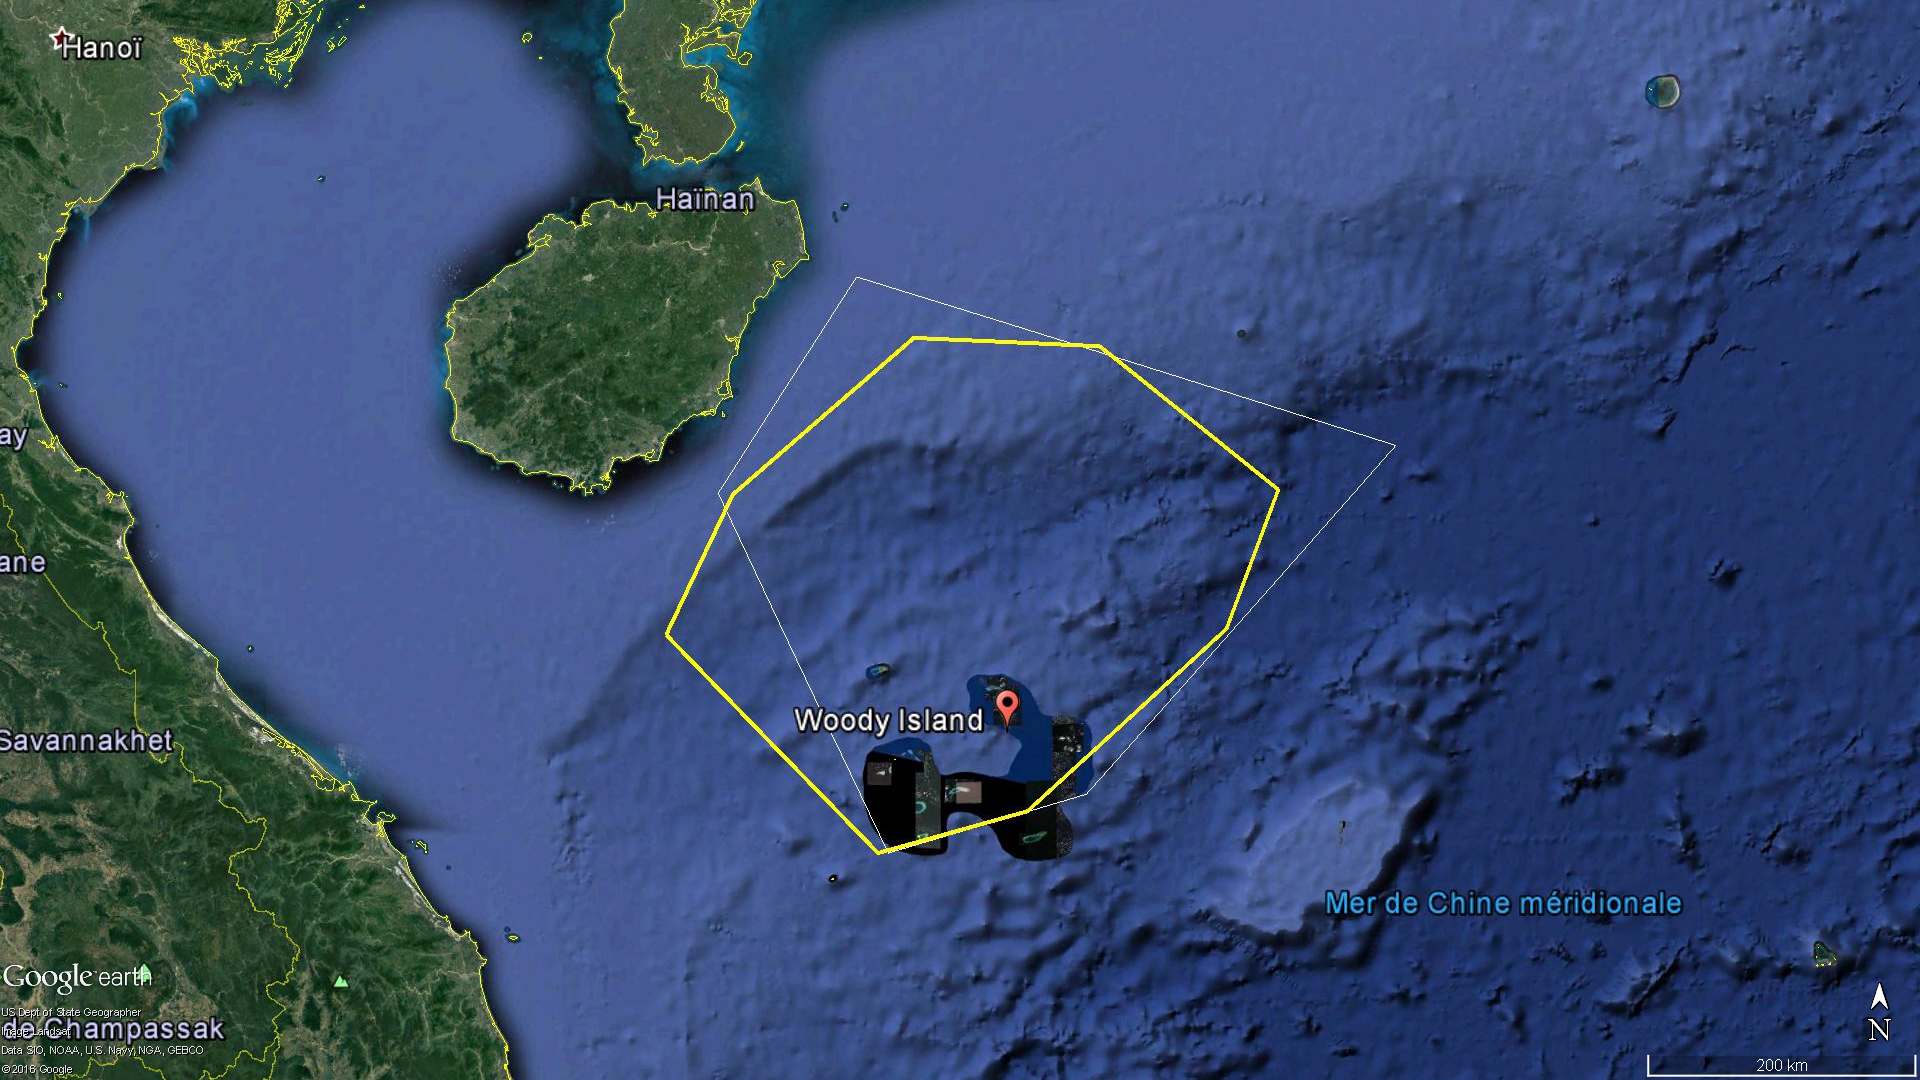 En jaune la zone aérienne délimitée par le NOTAM A1606/16, en blanc celle de MSA-2016-14163 / 琼航警0048 sur mer.